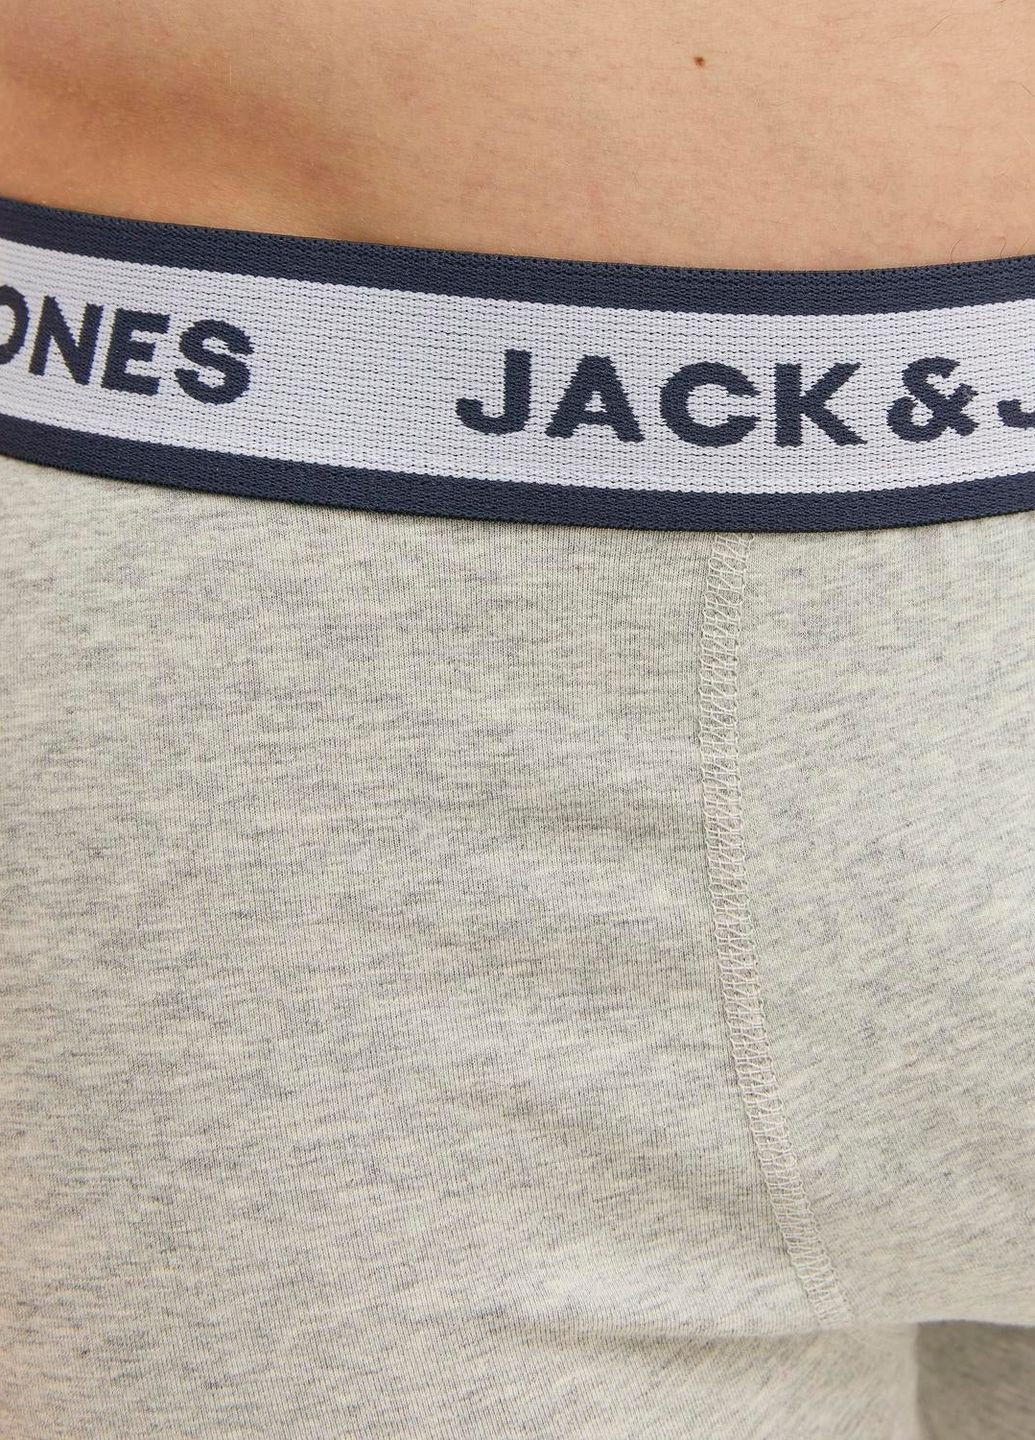 Комплект трусів,темно-синій-білий-сірий,JACK&JONES Jack & Jones (274235725)